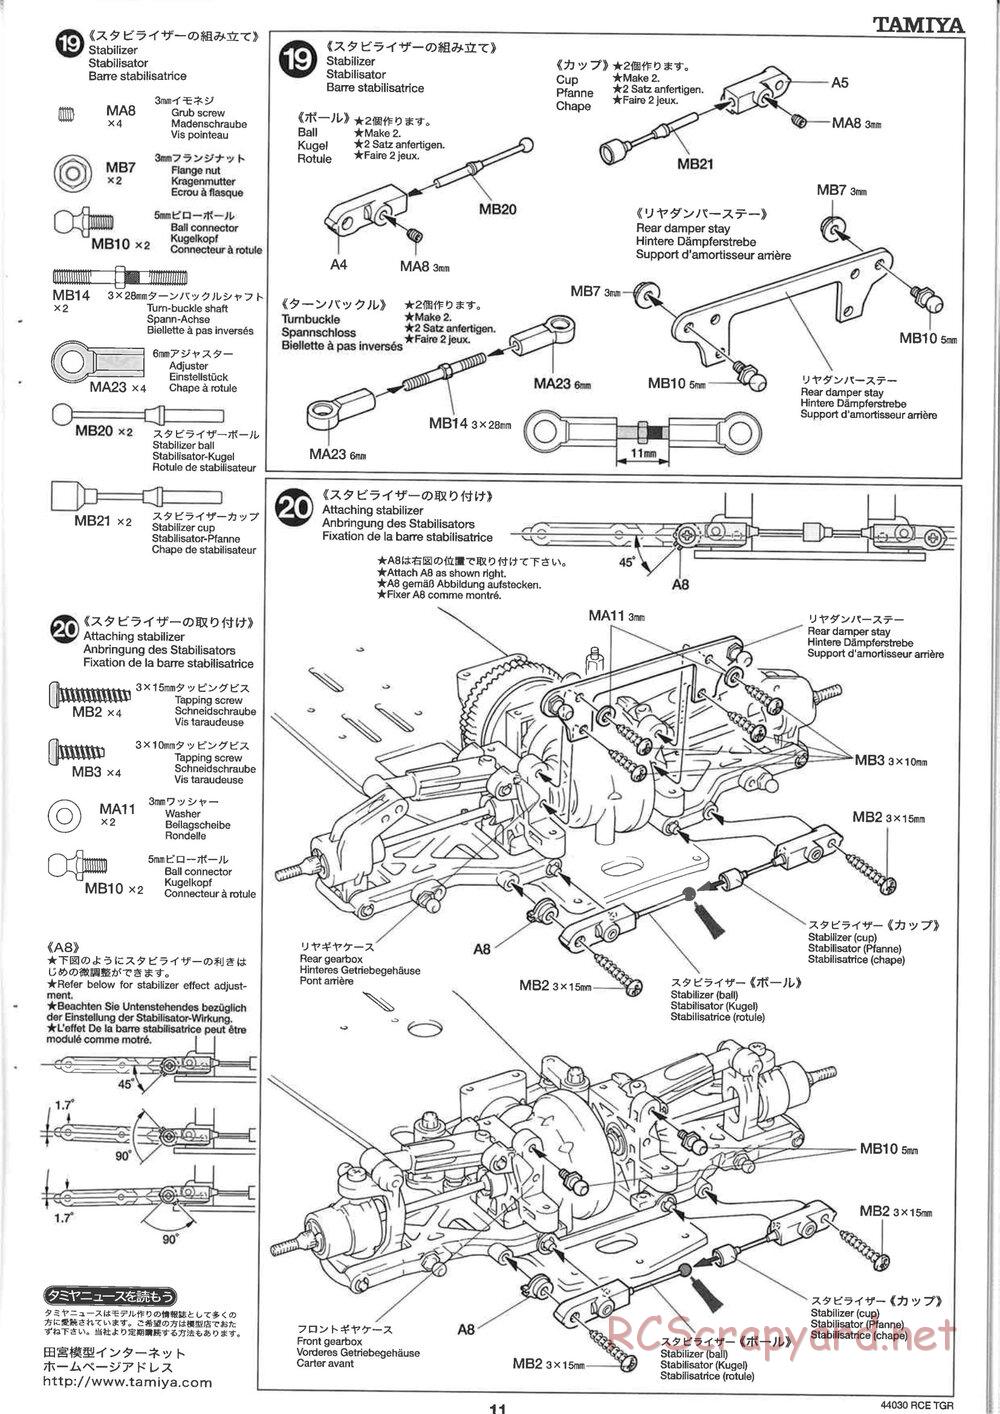 Tamiya - TGR Chassis - Manual - Page 11